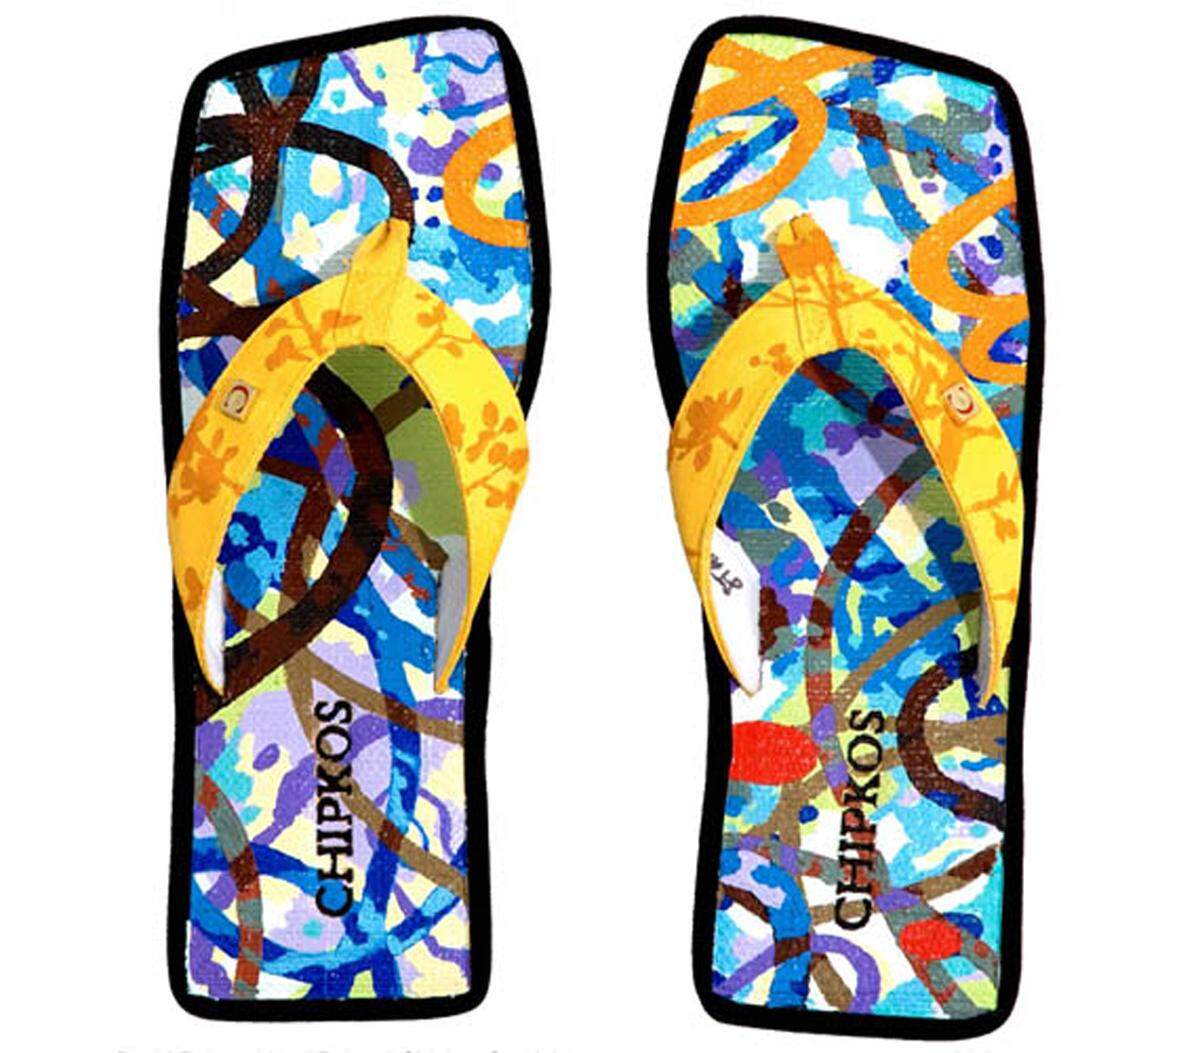 18.000 Dollar sind diese Flip-Flops wert. Sie wurden vom Künstler David Palmer für die Marke Chipkos  designt. Eine Investition für den guten Zweck, denn mit jedem verkauften Paar wird der Regenwald geschützt.